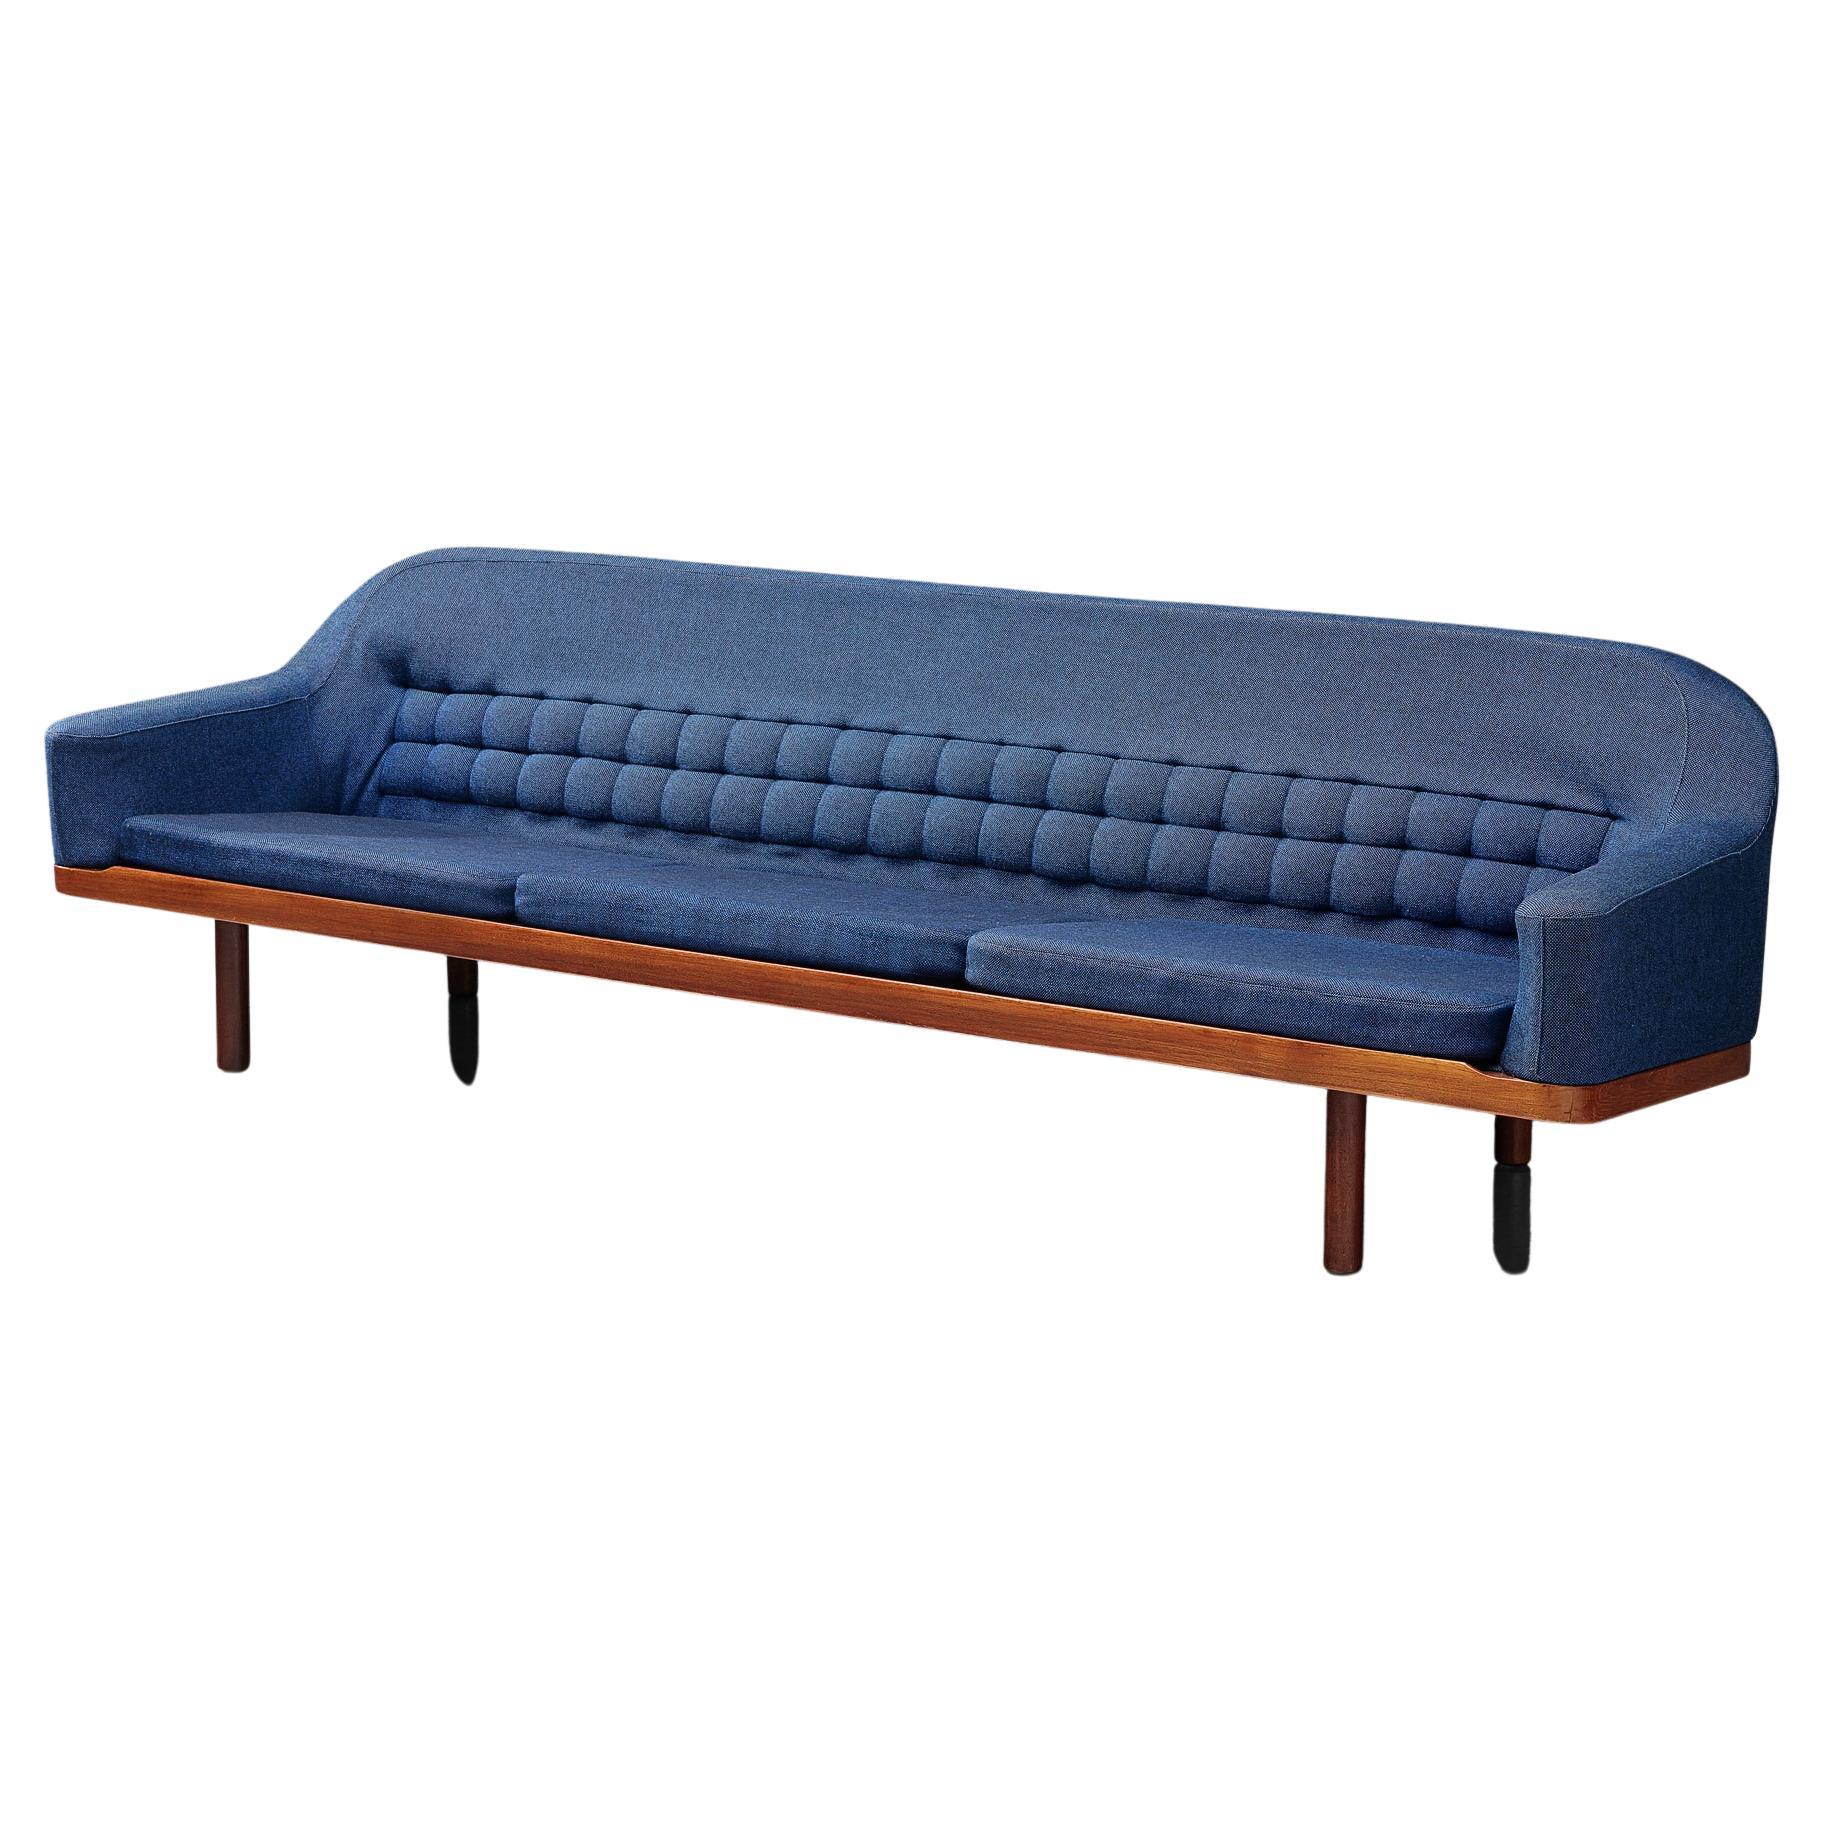 Arne Halvorsen Sofa in Teak and Blue Upholstery  For Sale